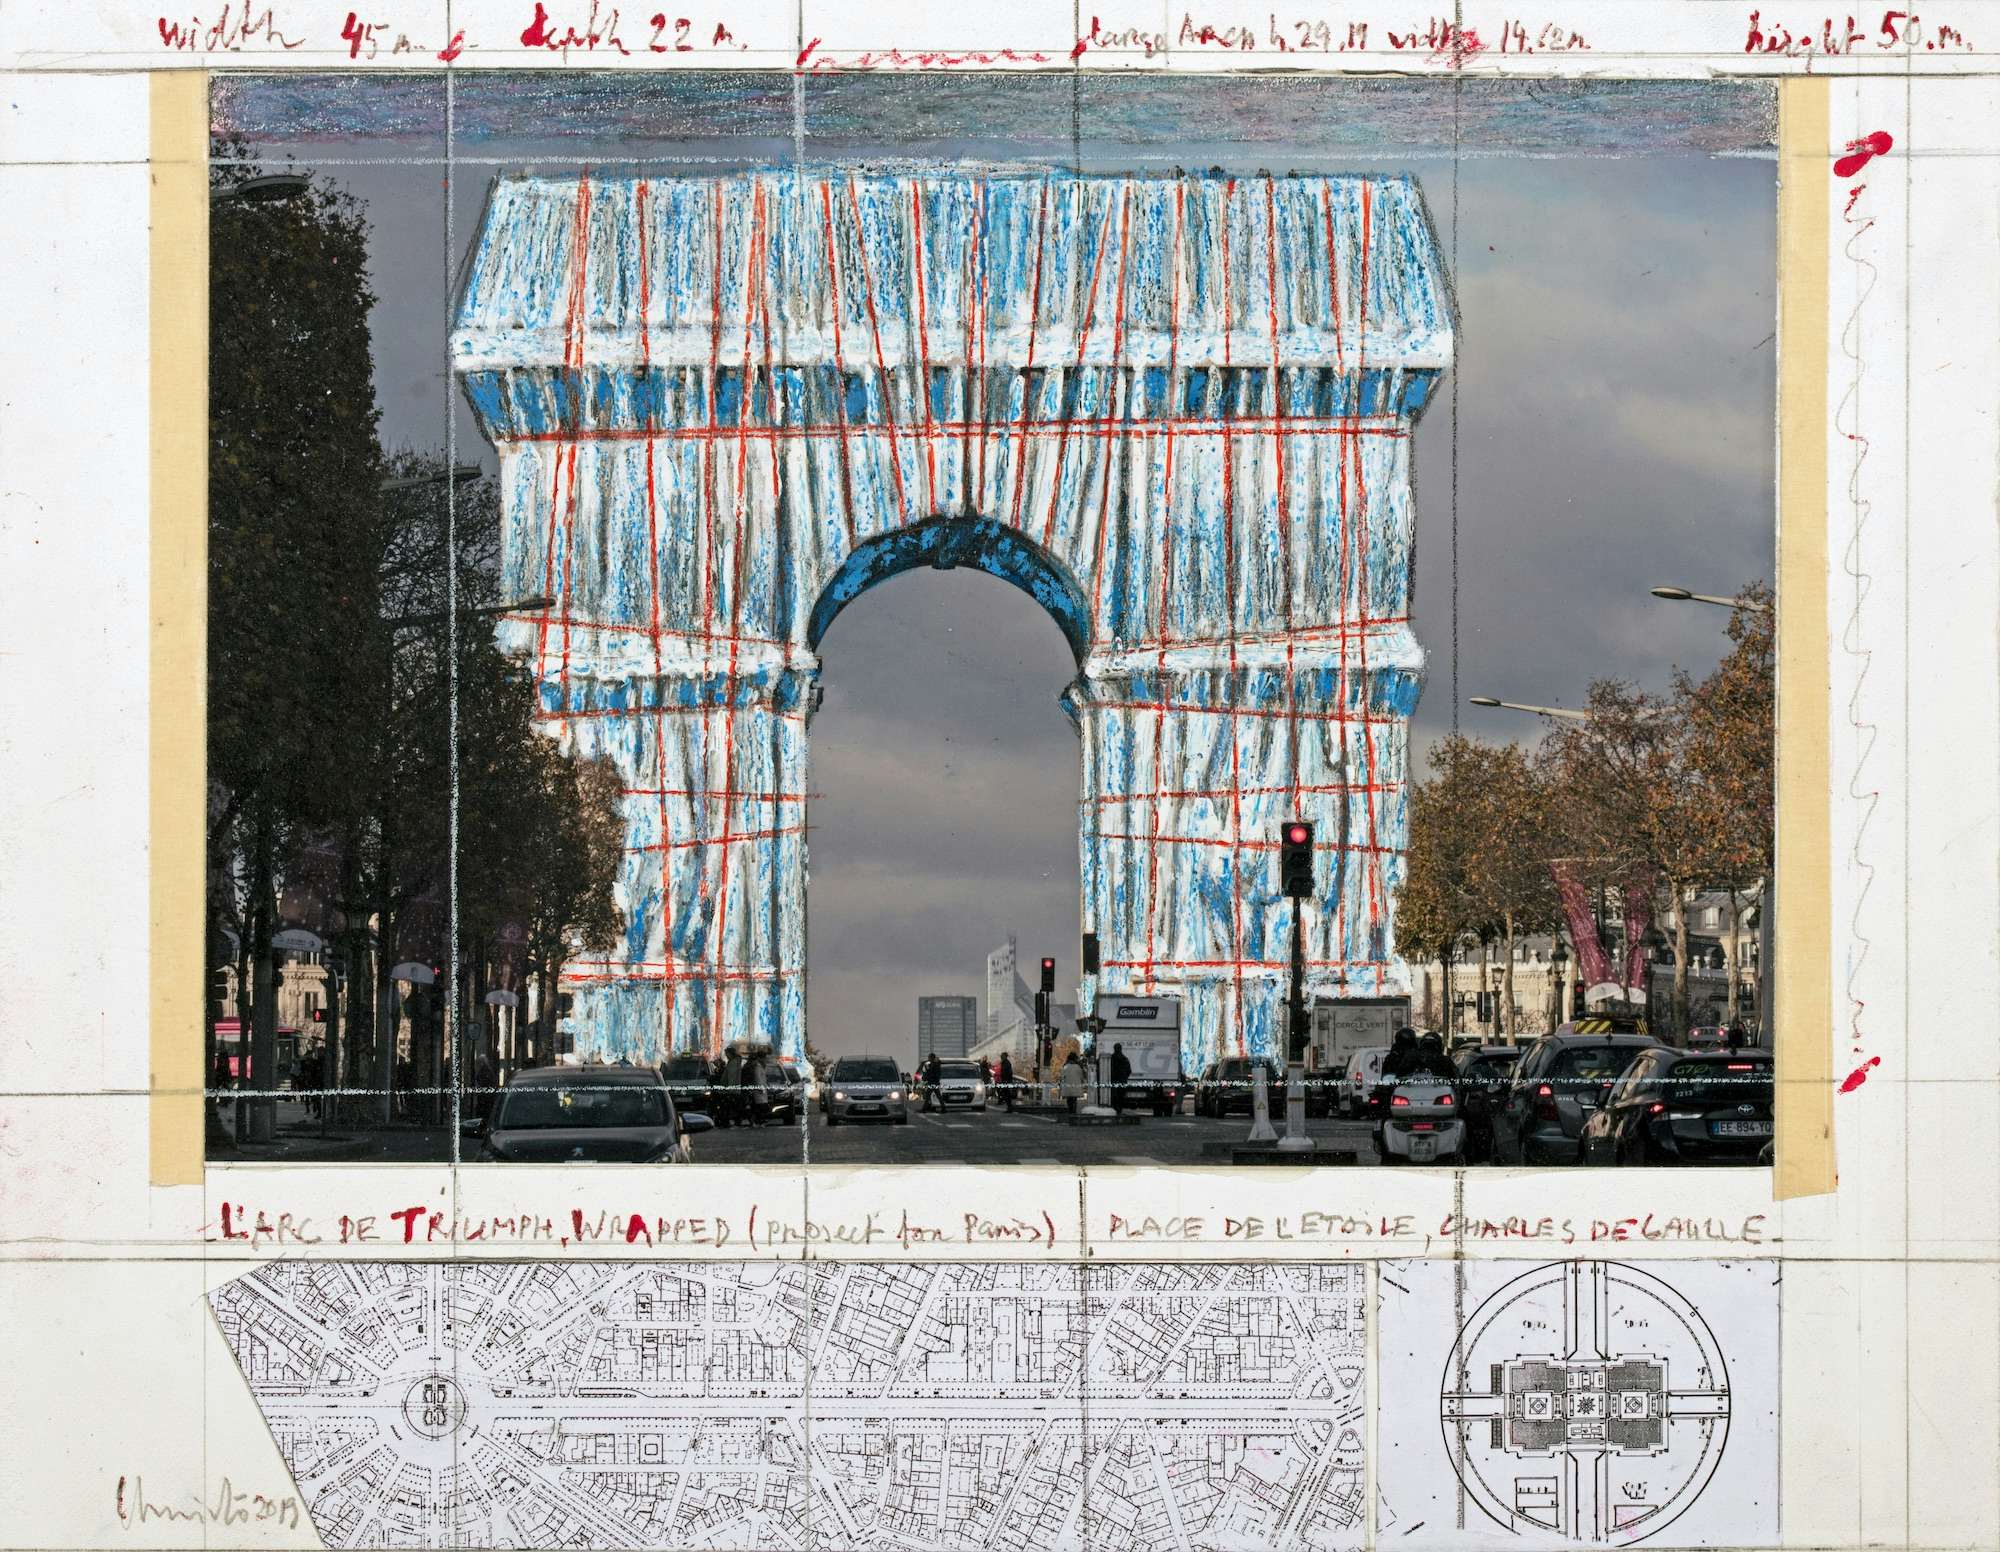 パリの凱旋門を包む。亡きクリストとジャンヌ＝クロードの意思を継ぐ大